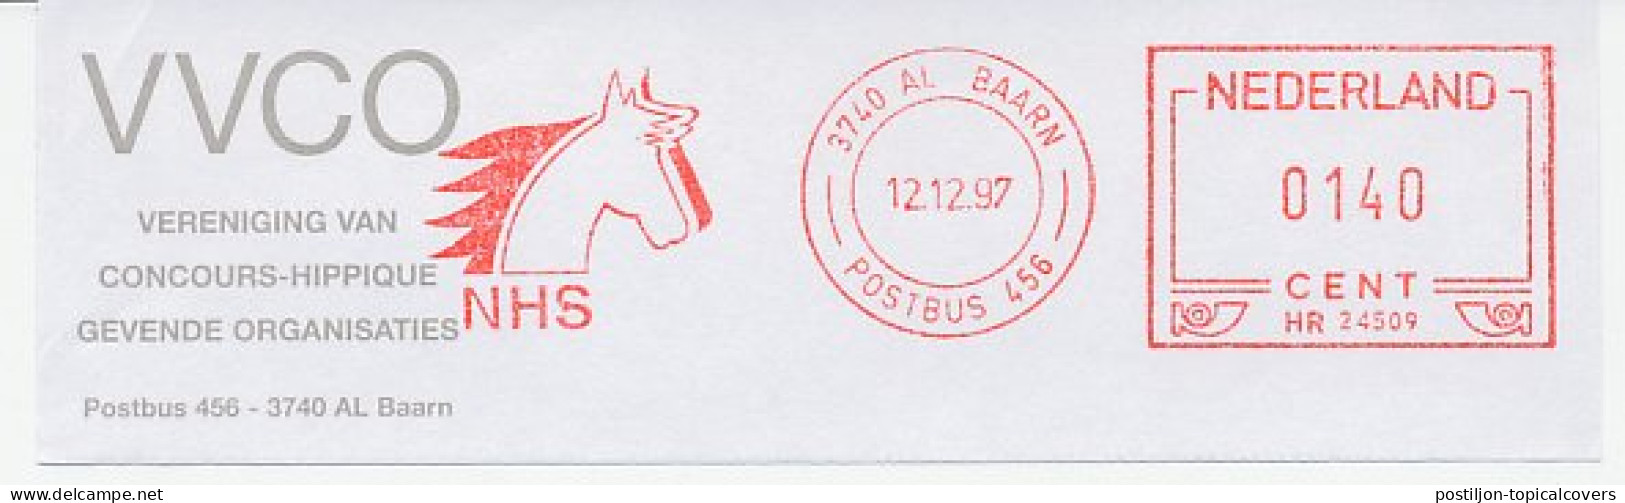 Meter Top Cut Netherlands 1997 Association Concours Hippique - Horse Show - Hípica